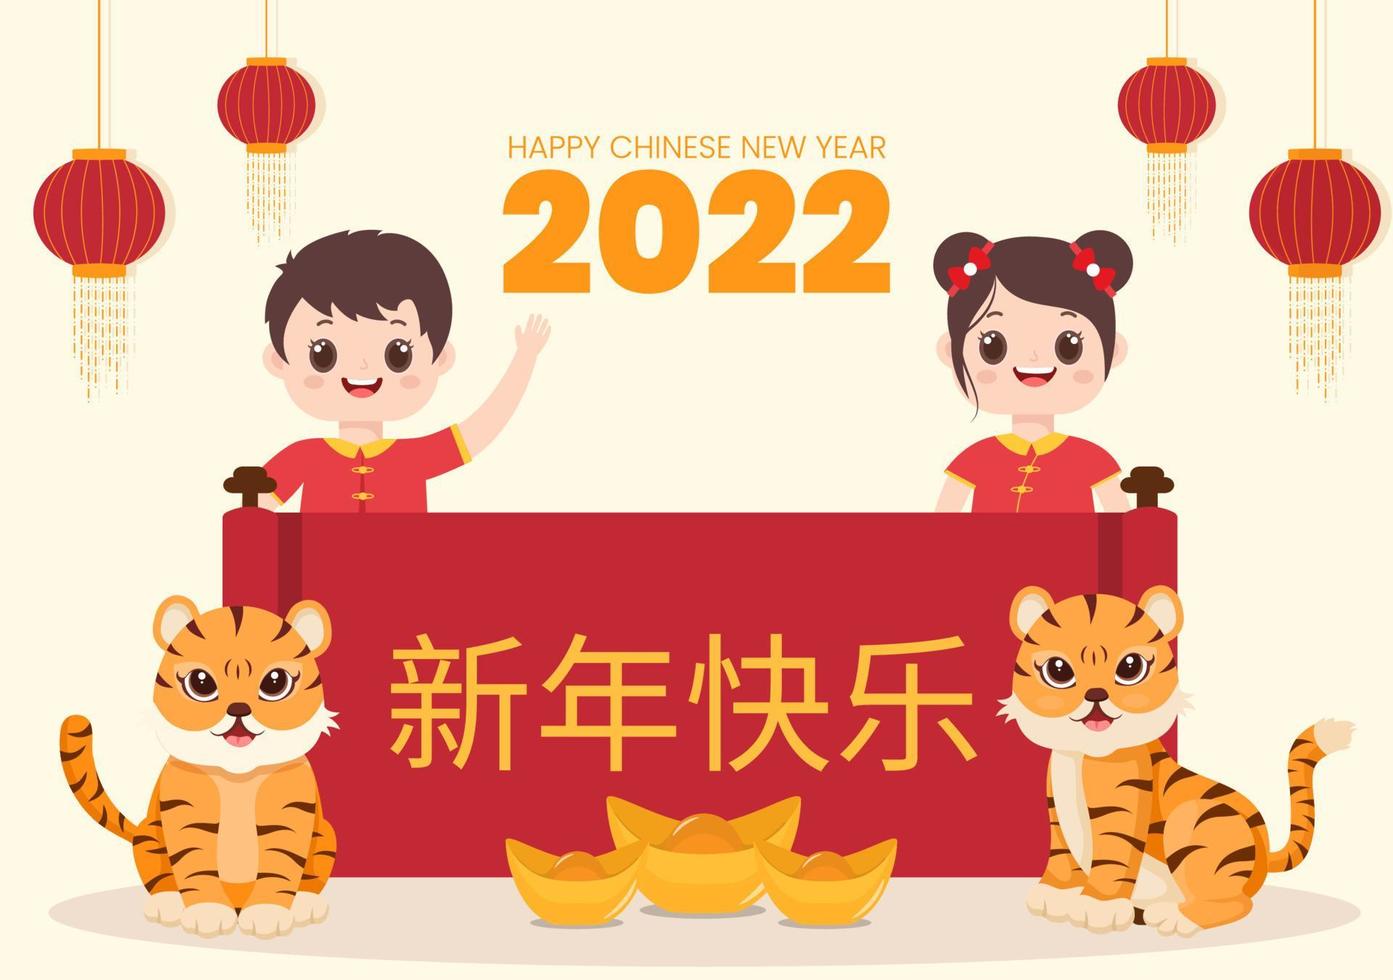 feliz ano novo chinês 2022 com zodíaco bonito tigre e crianças em fundo vermelho para cartão de felicitações, calendário ou pôster na ilustração de design plano vetor